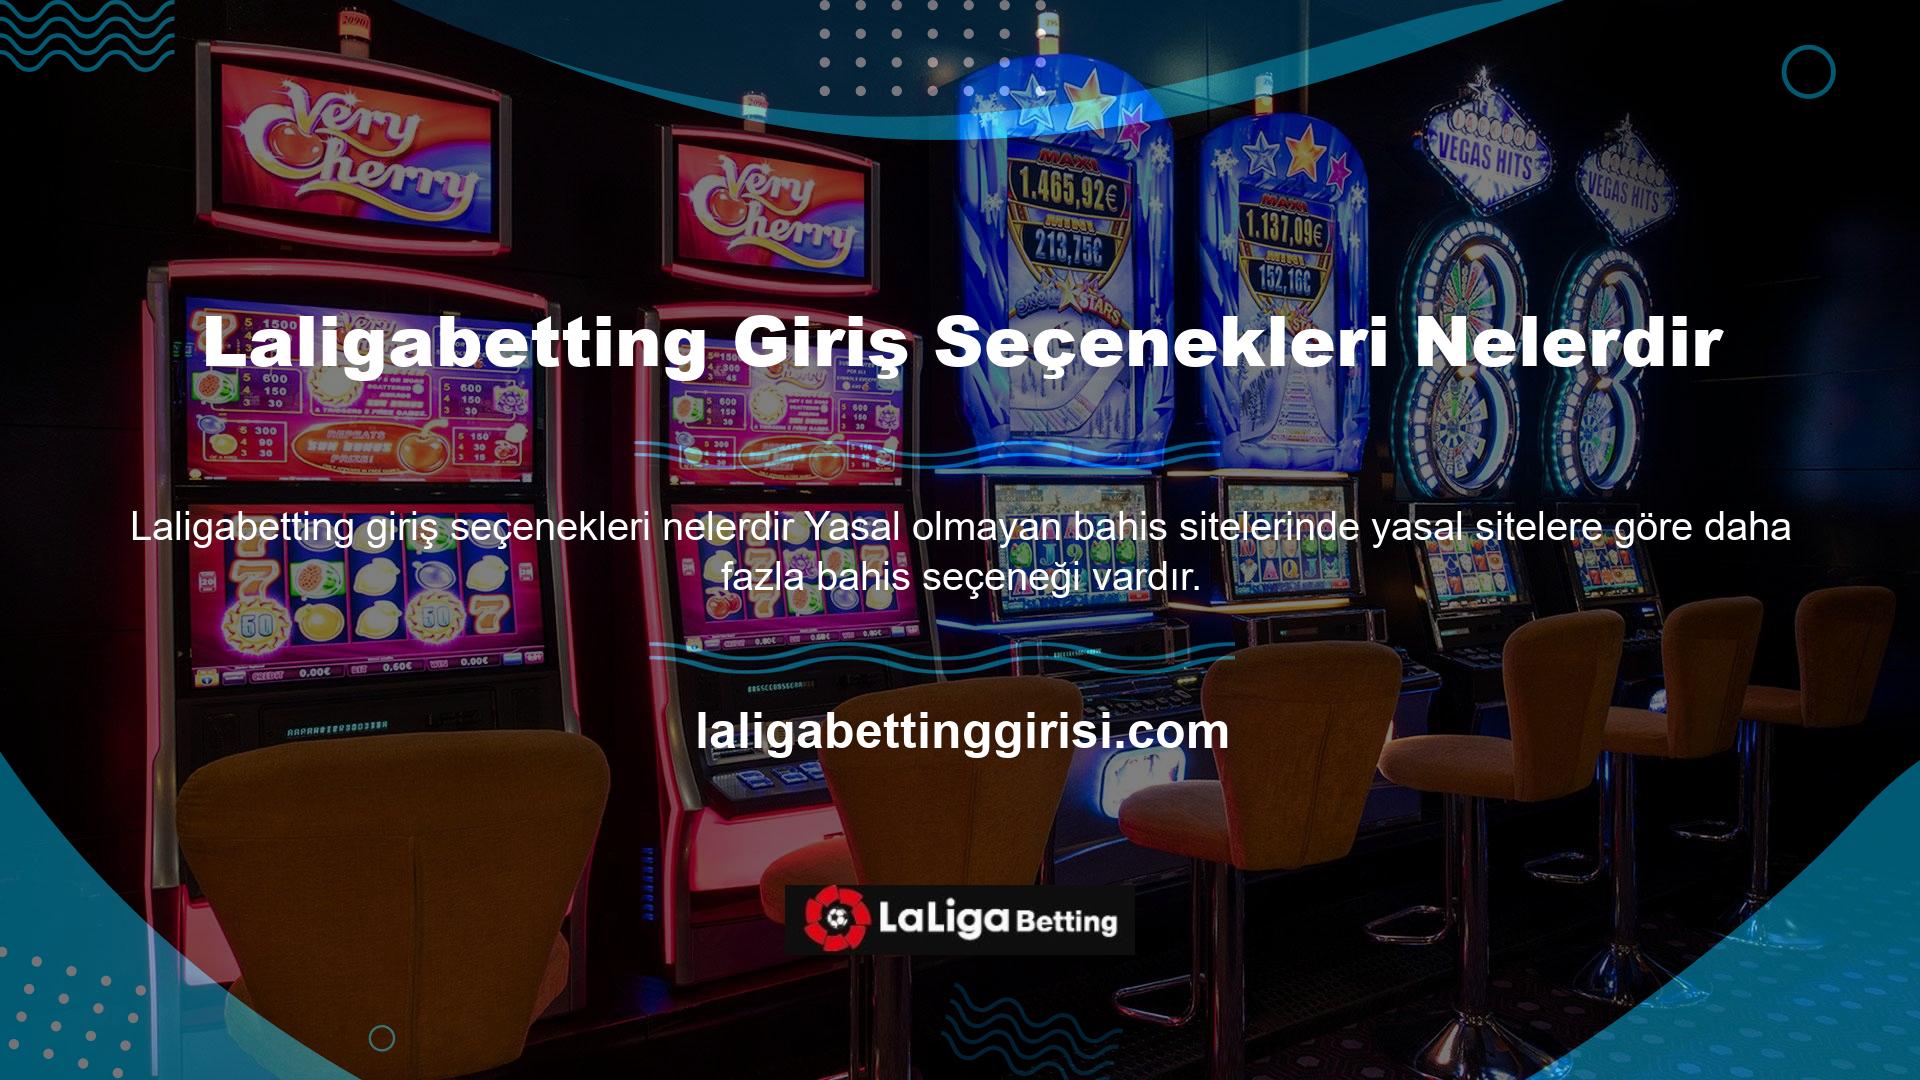 Türkiye'de faaliyet gösteren Laligabetting, oyun ve casino seçeneklerini tek çatı altında sunarak farklı oyuncuların ihtiyaçlarına başarıyla hizmet etmiştir